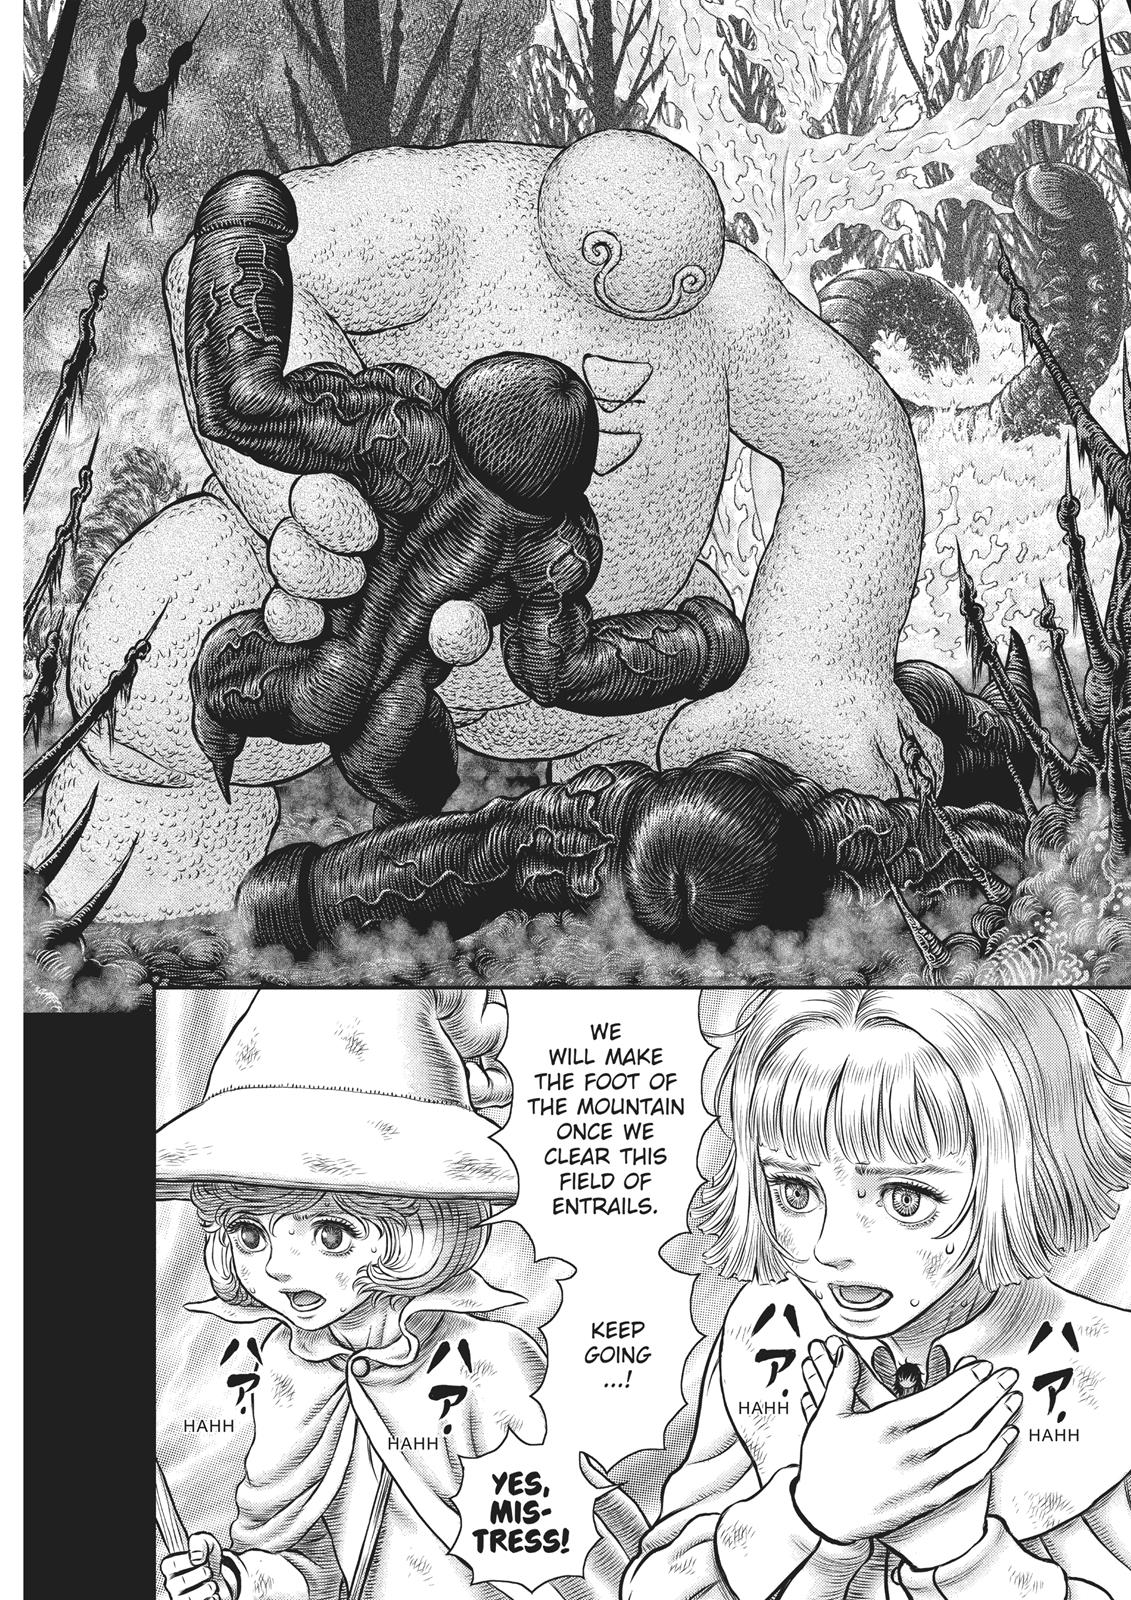 Berserk Manga Chapter 351 image 23